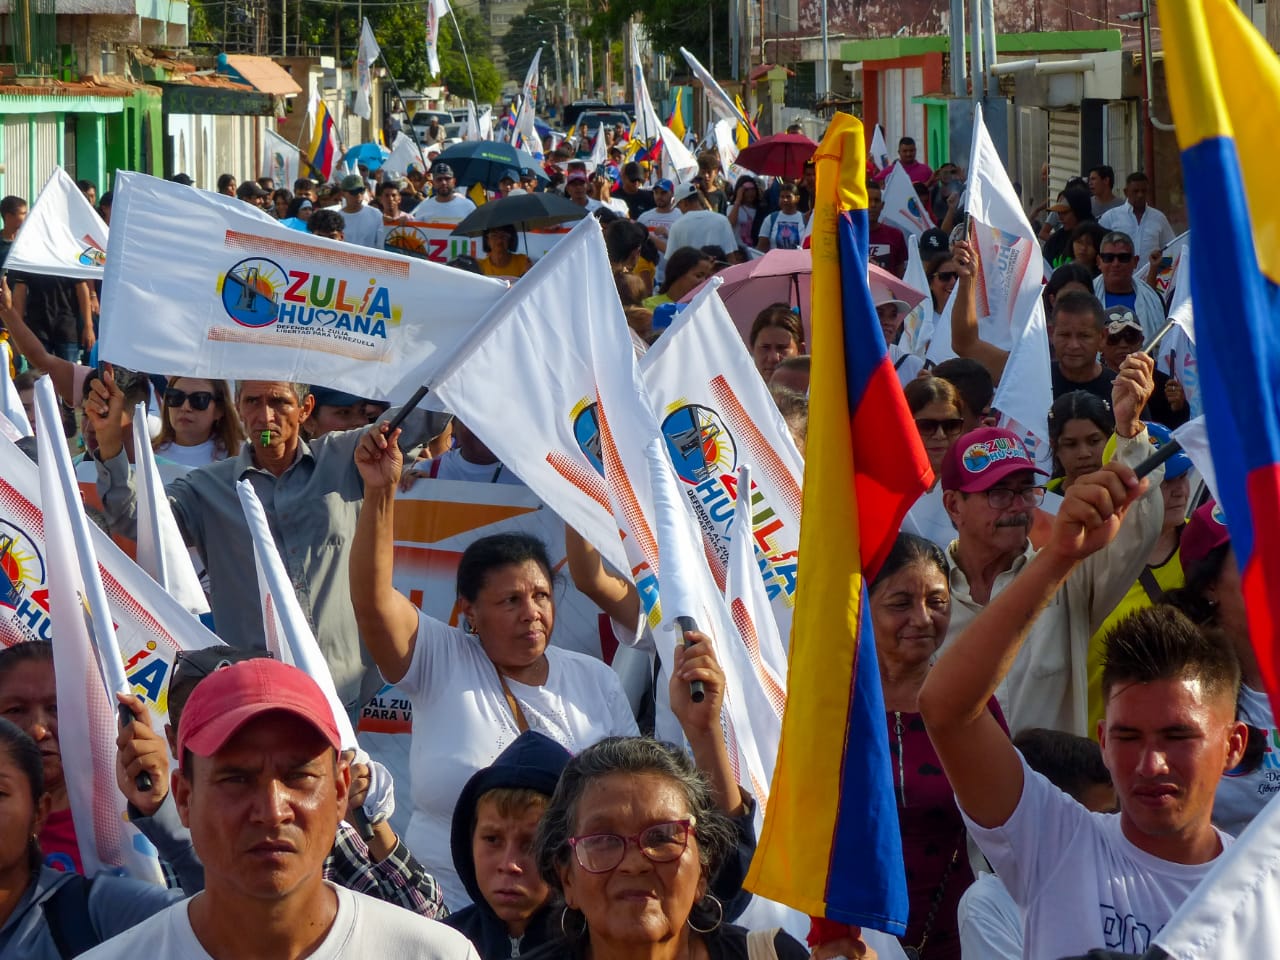 Dirigentes de Zulia Humana : “No habrá trampa posible que impida la victoria”